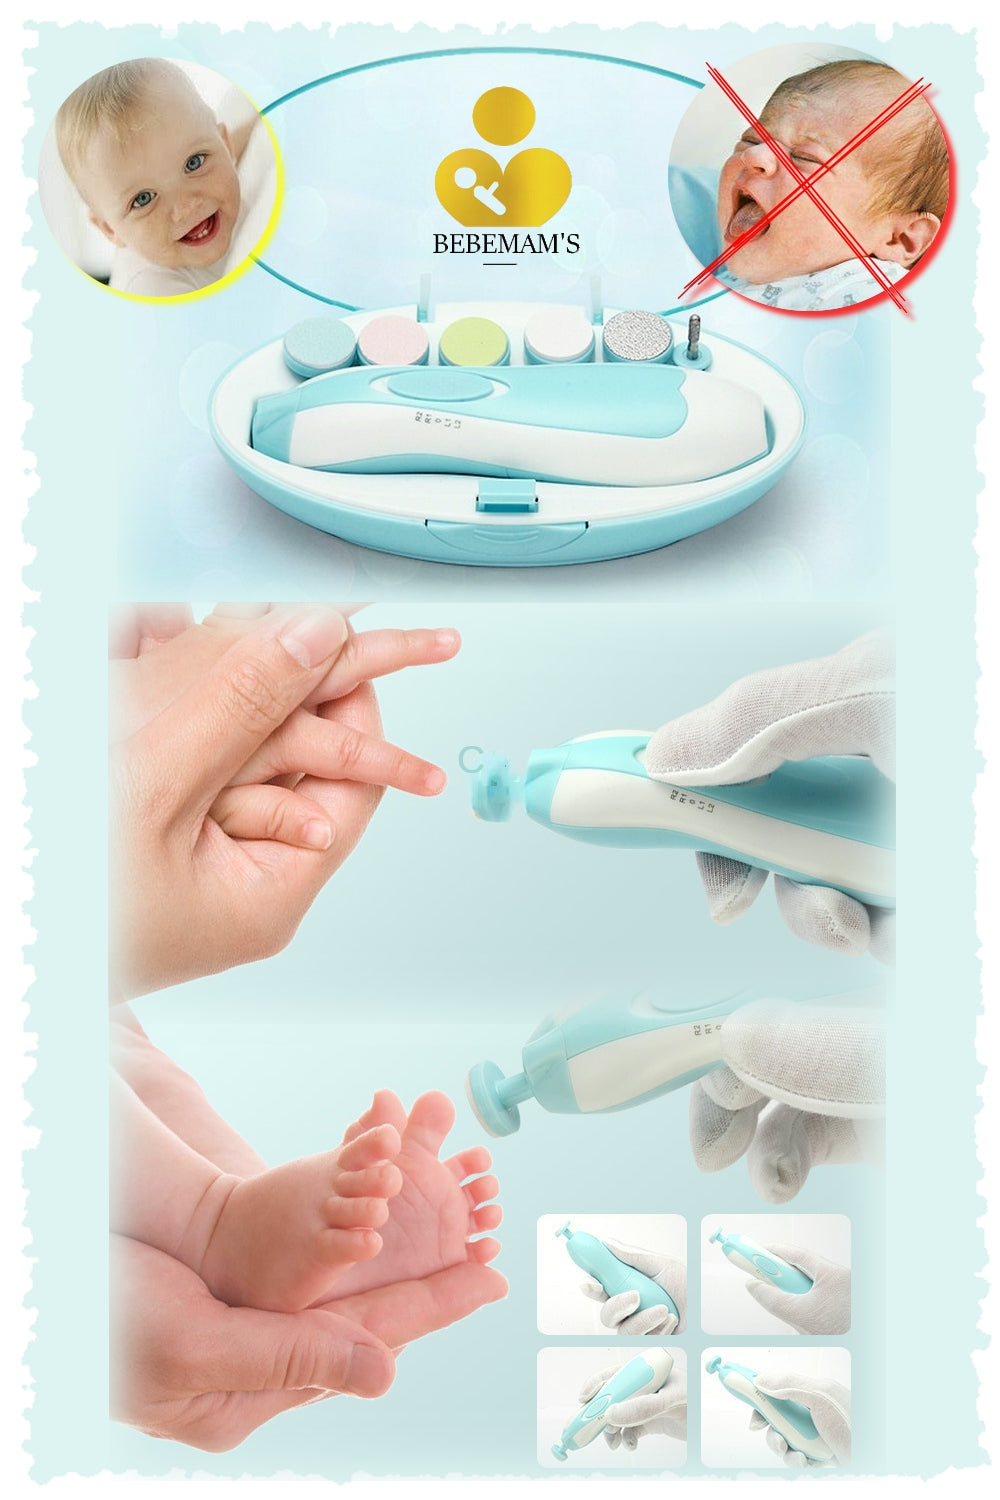 Soin des ongles Lime à Ongles Électrique pour Bébé, Safe Baby Nail